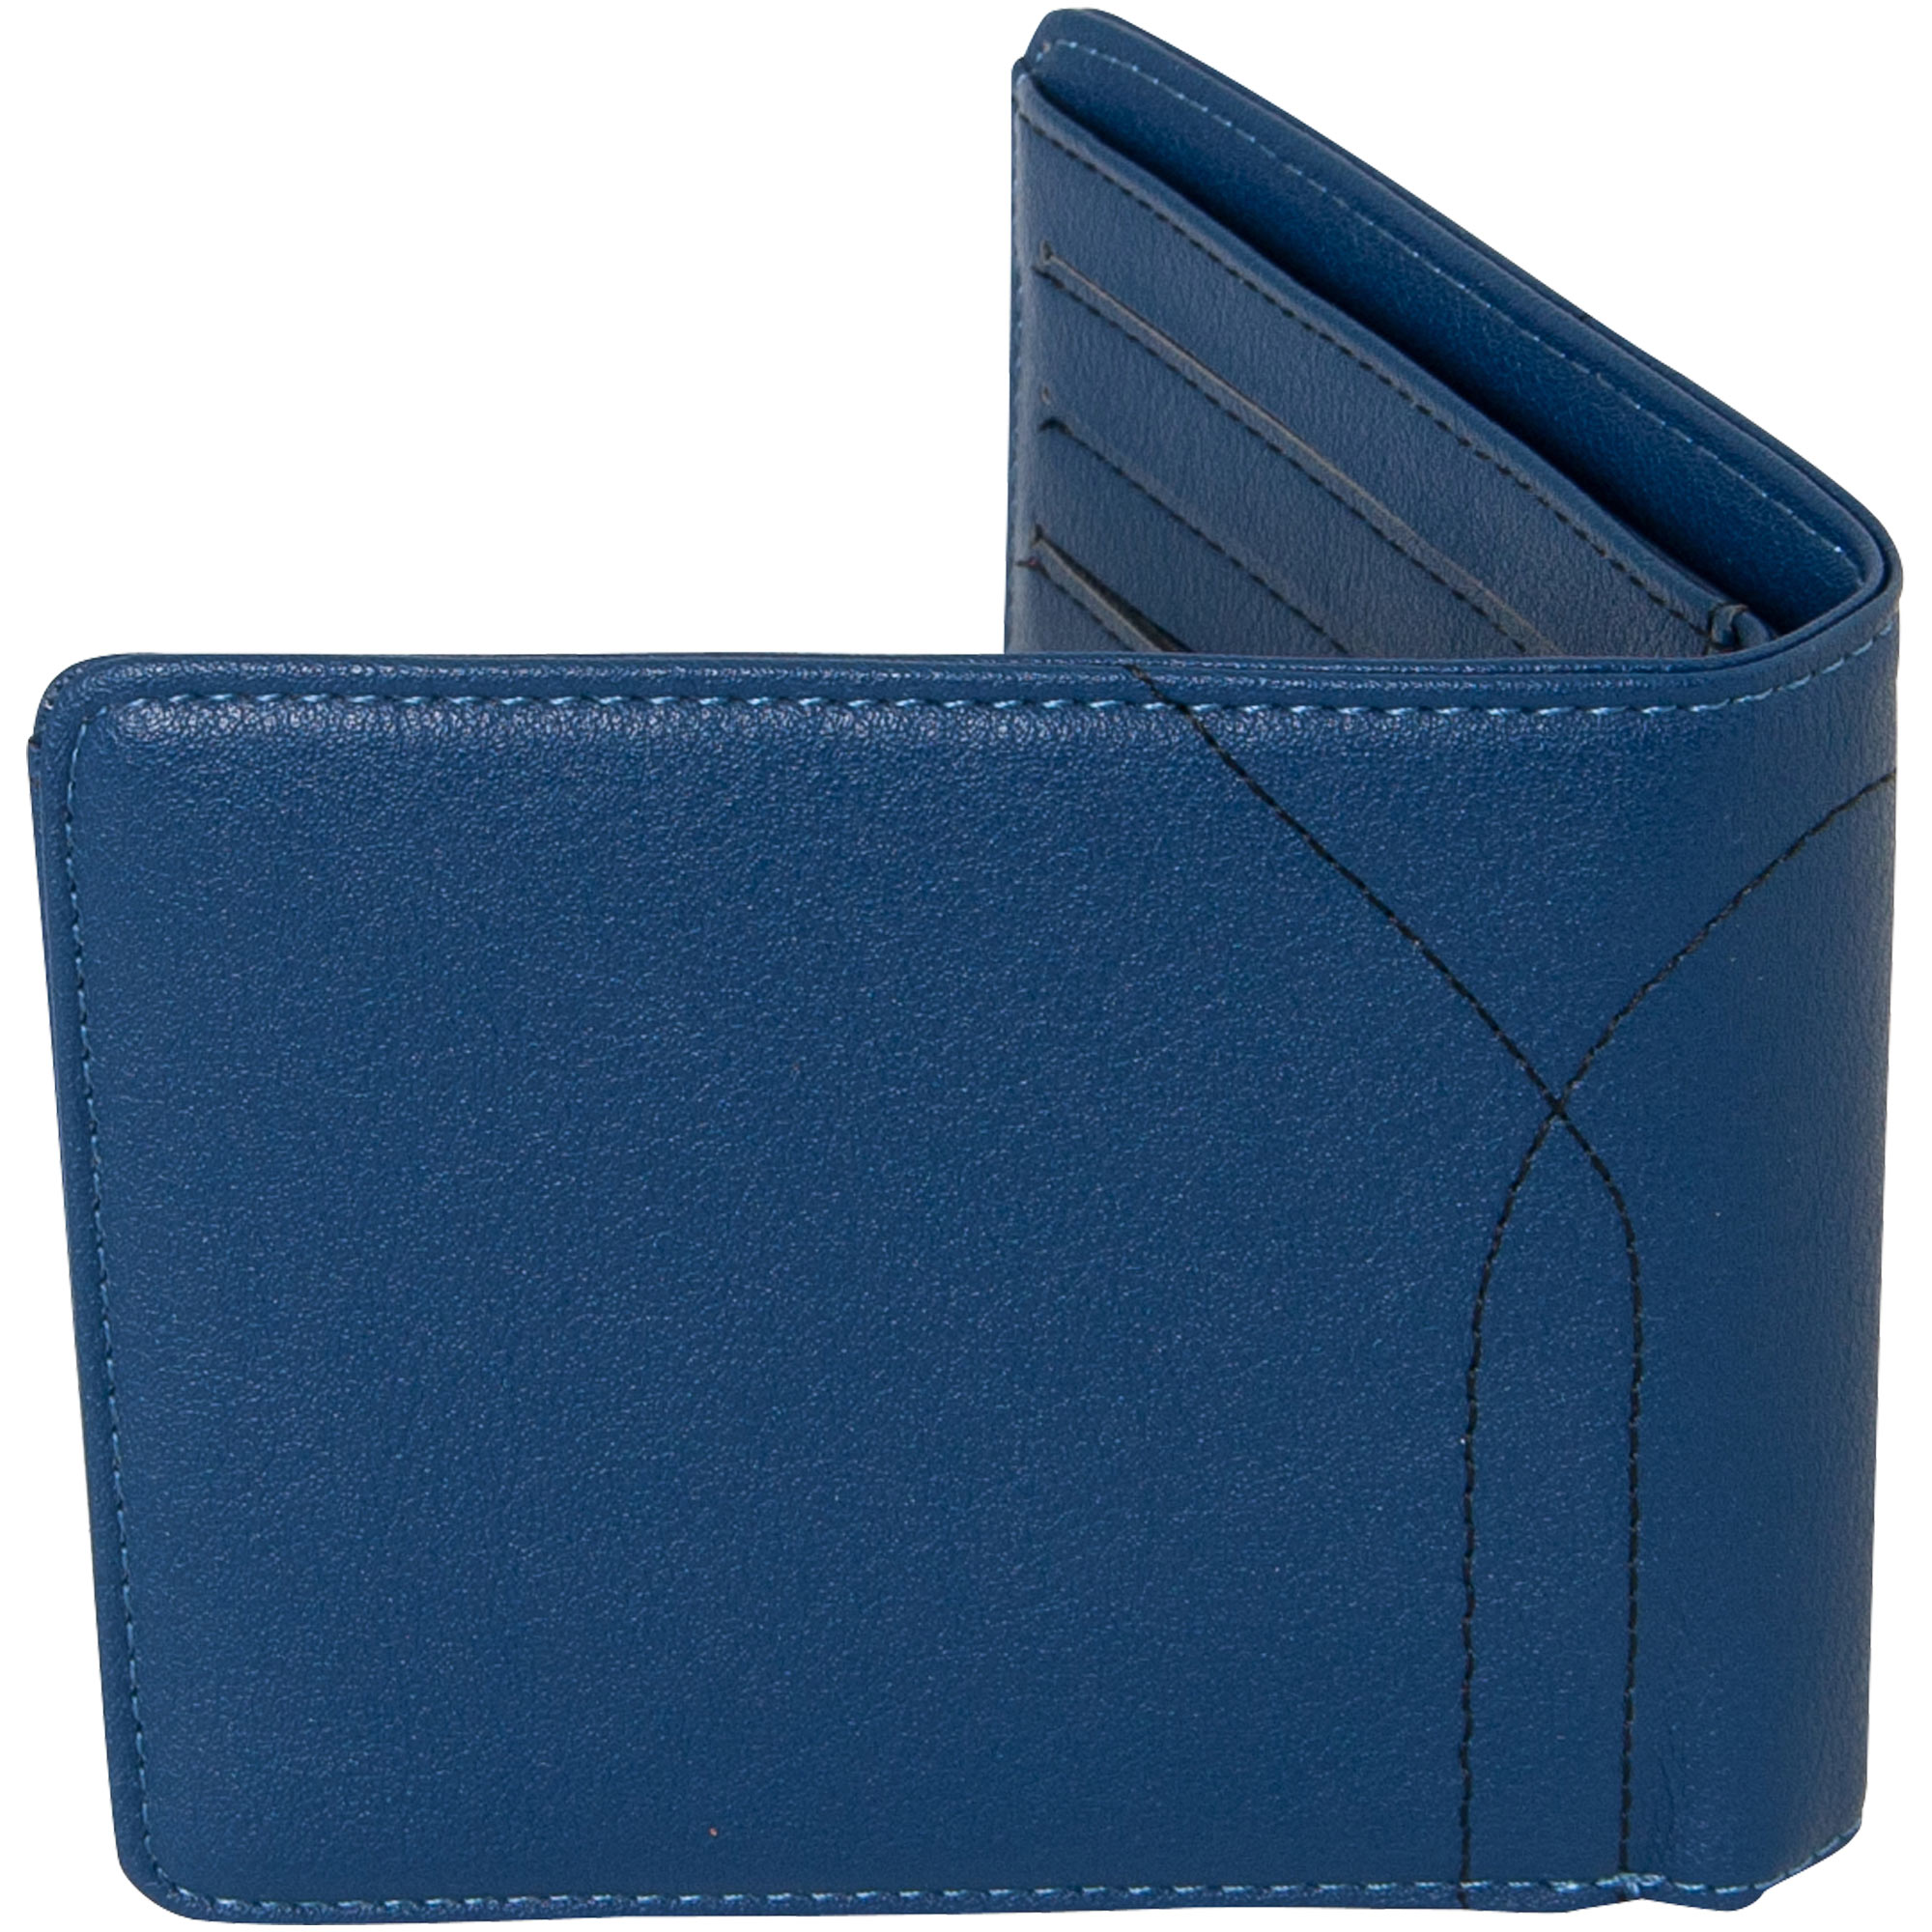 Bugatti wallet "Macaron" - blue